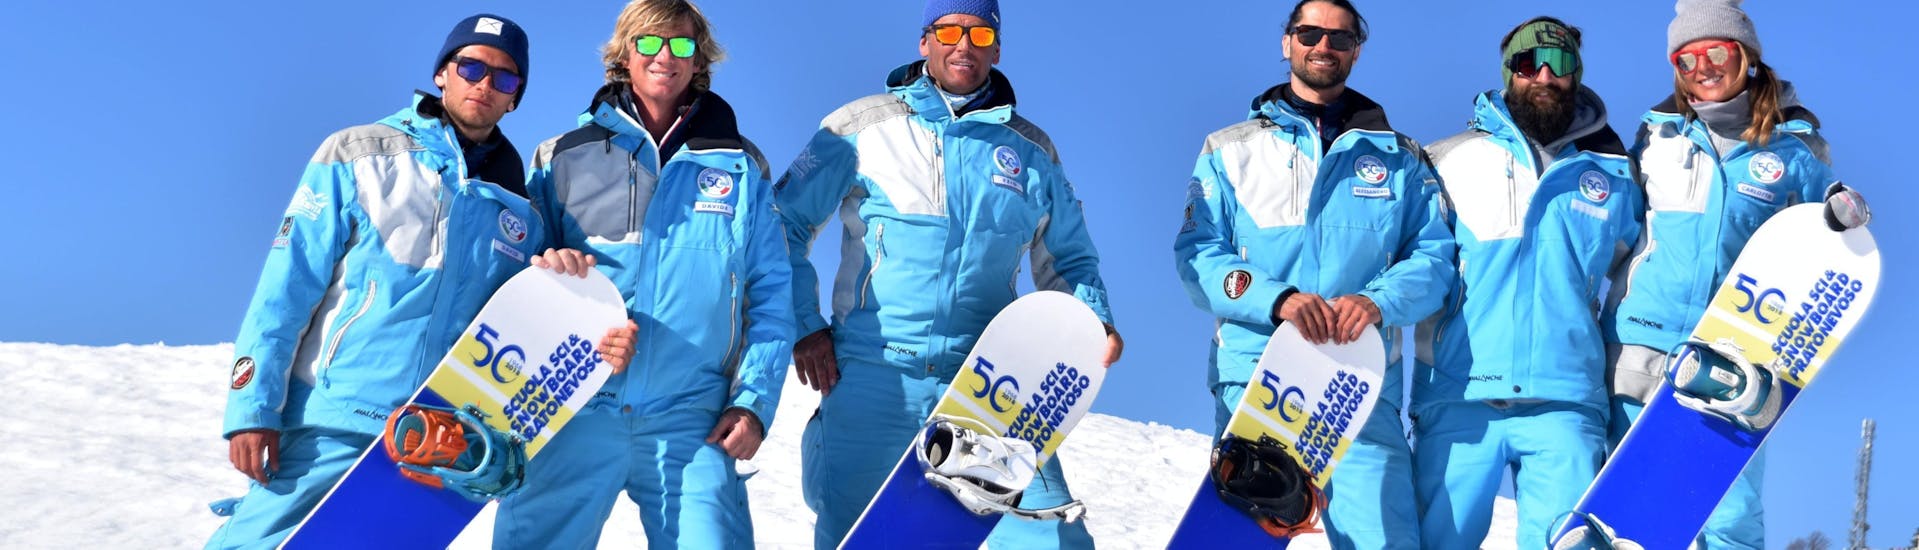 Maestri di snowboard sorridono in camera a Prato Nevoso dopo una delle Lezioni private di snowboard per tutte le età e livelli.